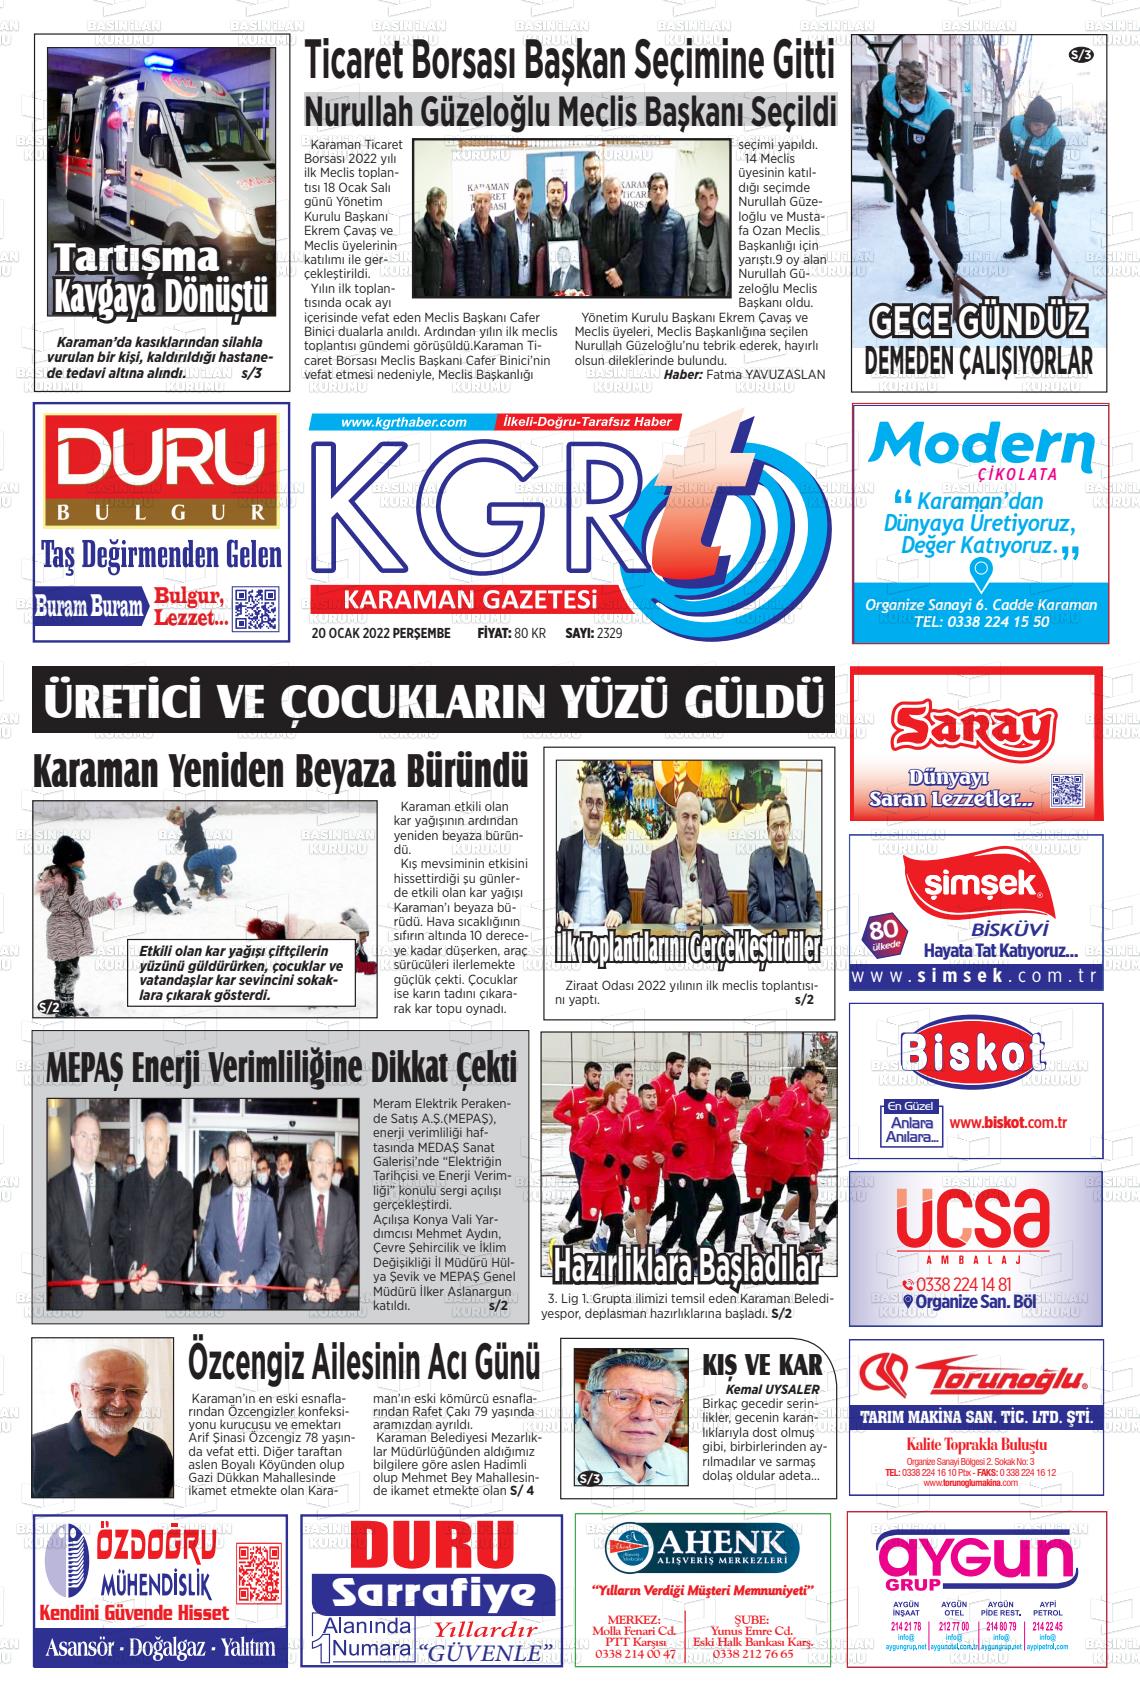 20 Ocak 2022 Kgrt Karaman Gazete Manşeti